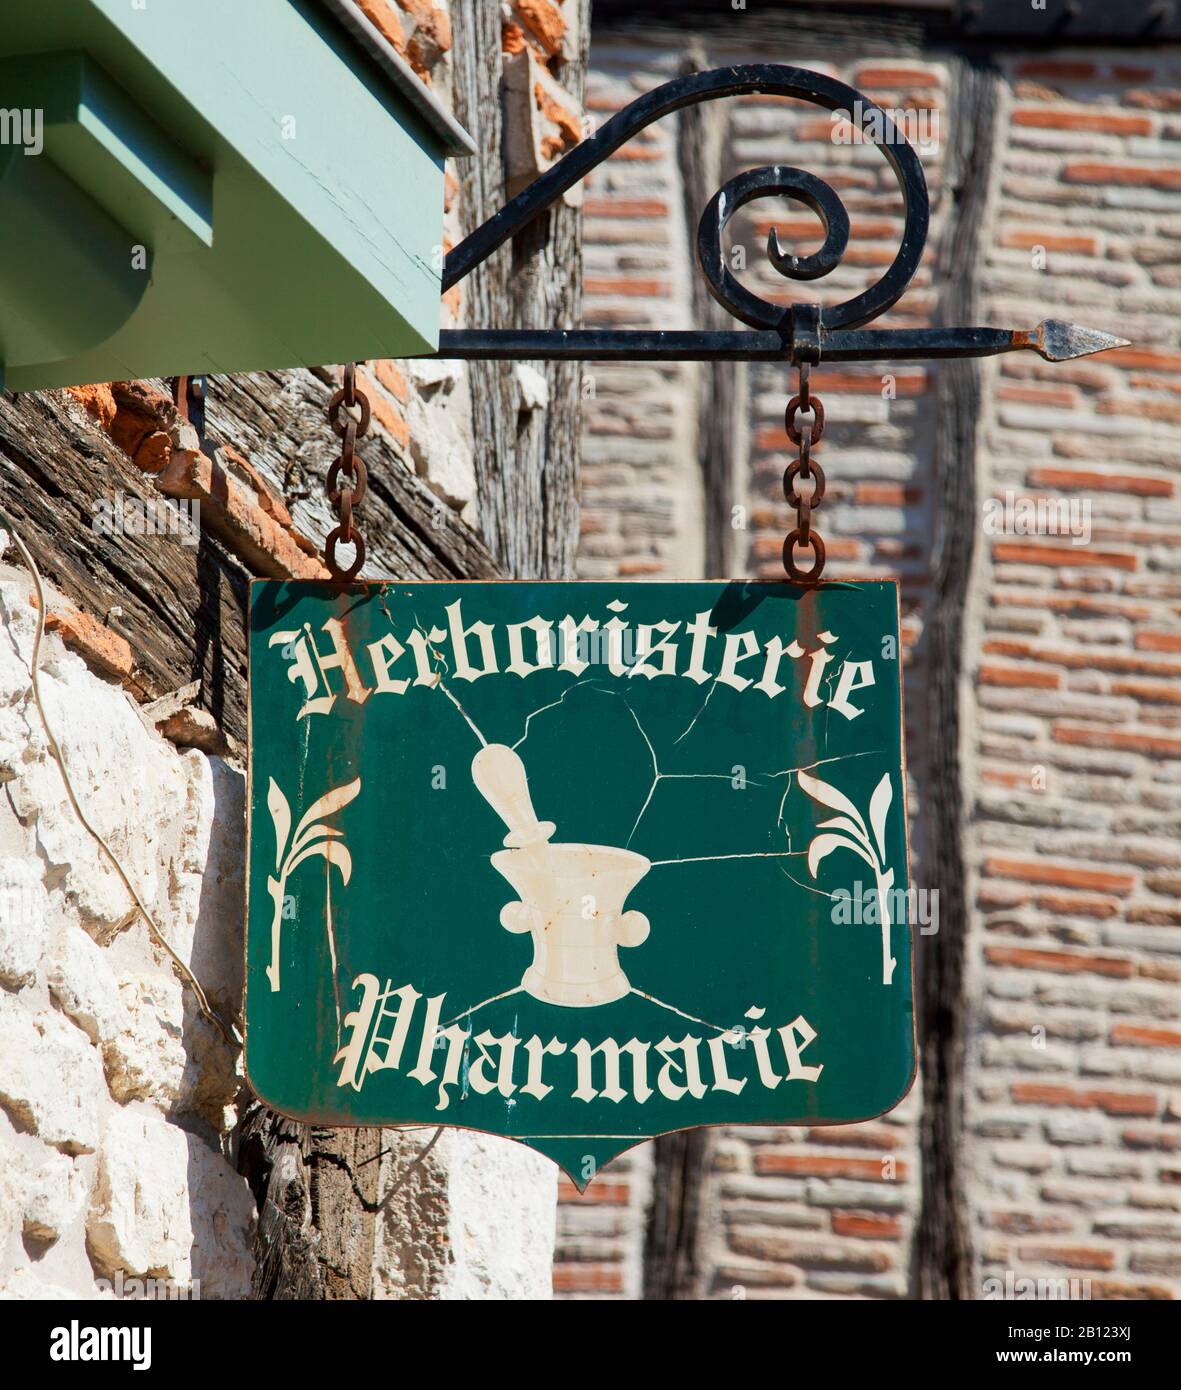 Panneau de pharmacie, Castelnau de Montmiral, Tarn, région Midi Pyrénées, France, Europe Banque D'Images